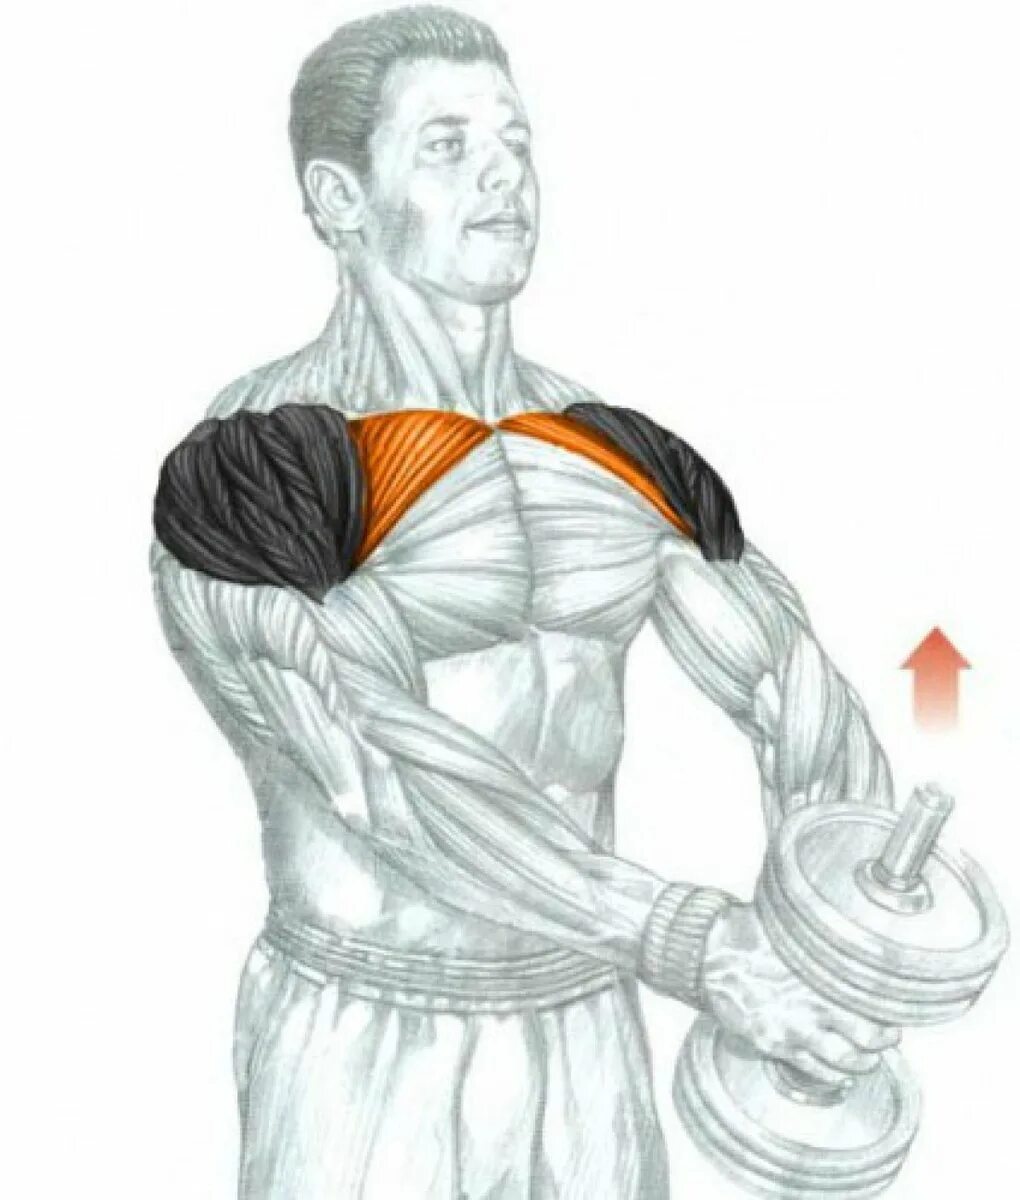 Дельты мышцы упражнения. Подъем гантелей перед собой передняя Дельта. Задний пучок дельтовидной мышцы упражнения гантелями. Жим гантелей передняя Дельта.